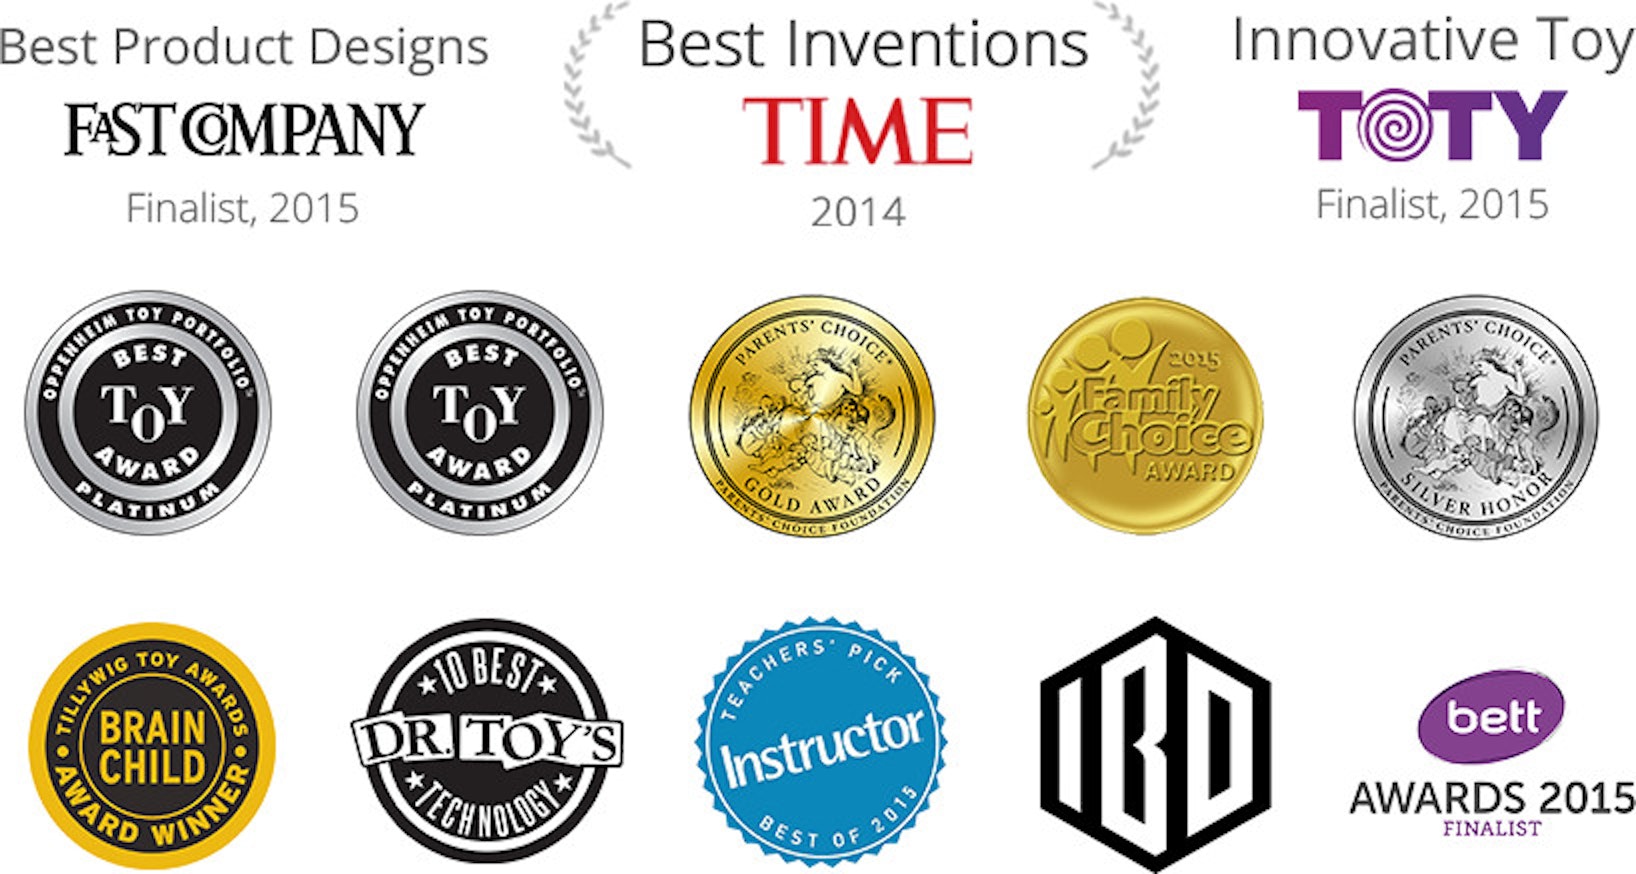 Best Inventions TIME 2014, Parents’ Choice Award, der angesehene Oppenheim "Best Toy Award" Platin, TOTY - innovativstes Spielzeug Finalist 2015